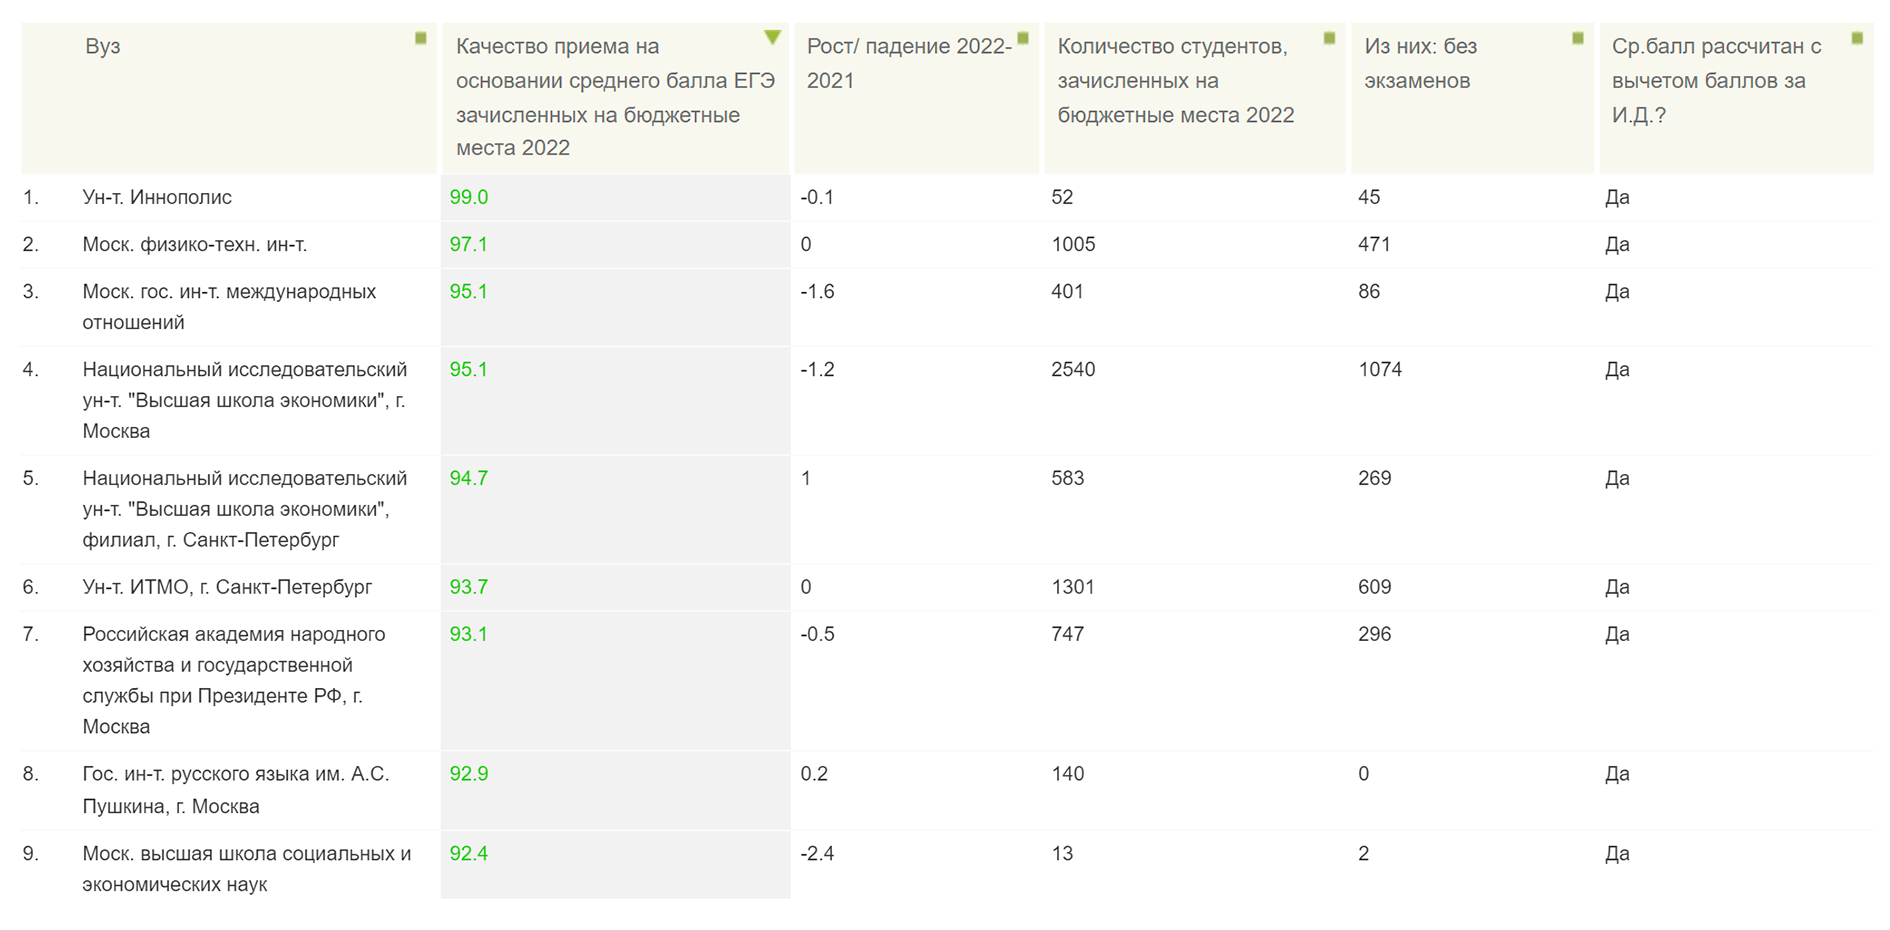 Для сравнения: таков средний балл ЕГЭ поступающих в вузы в 2022 году. Источник: ege.hse.ru